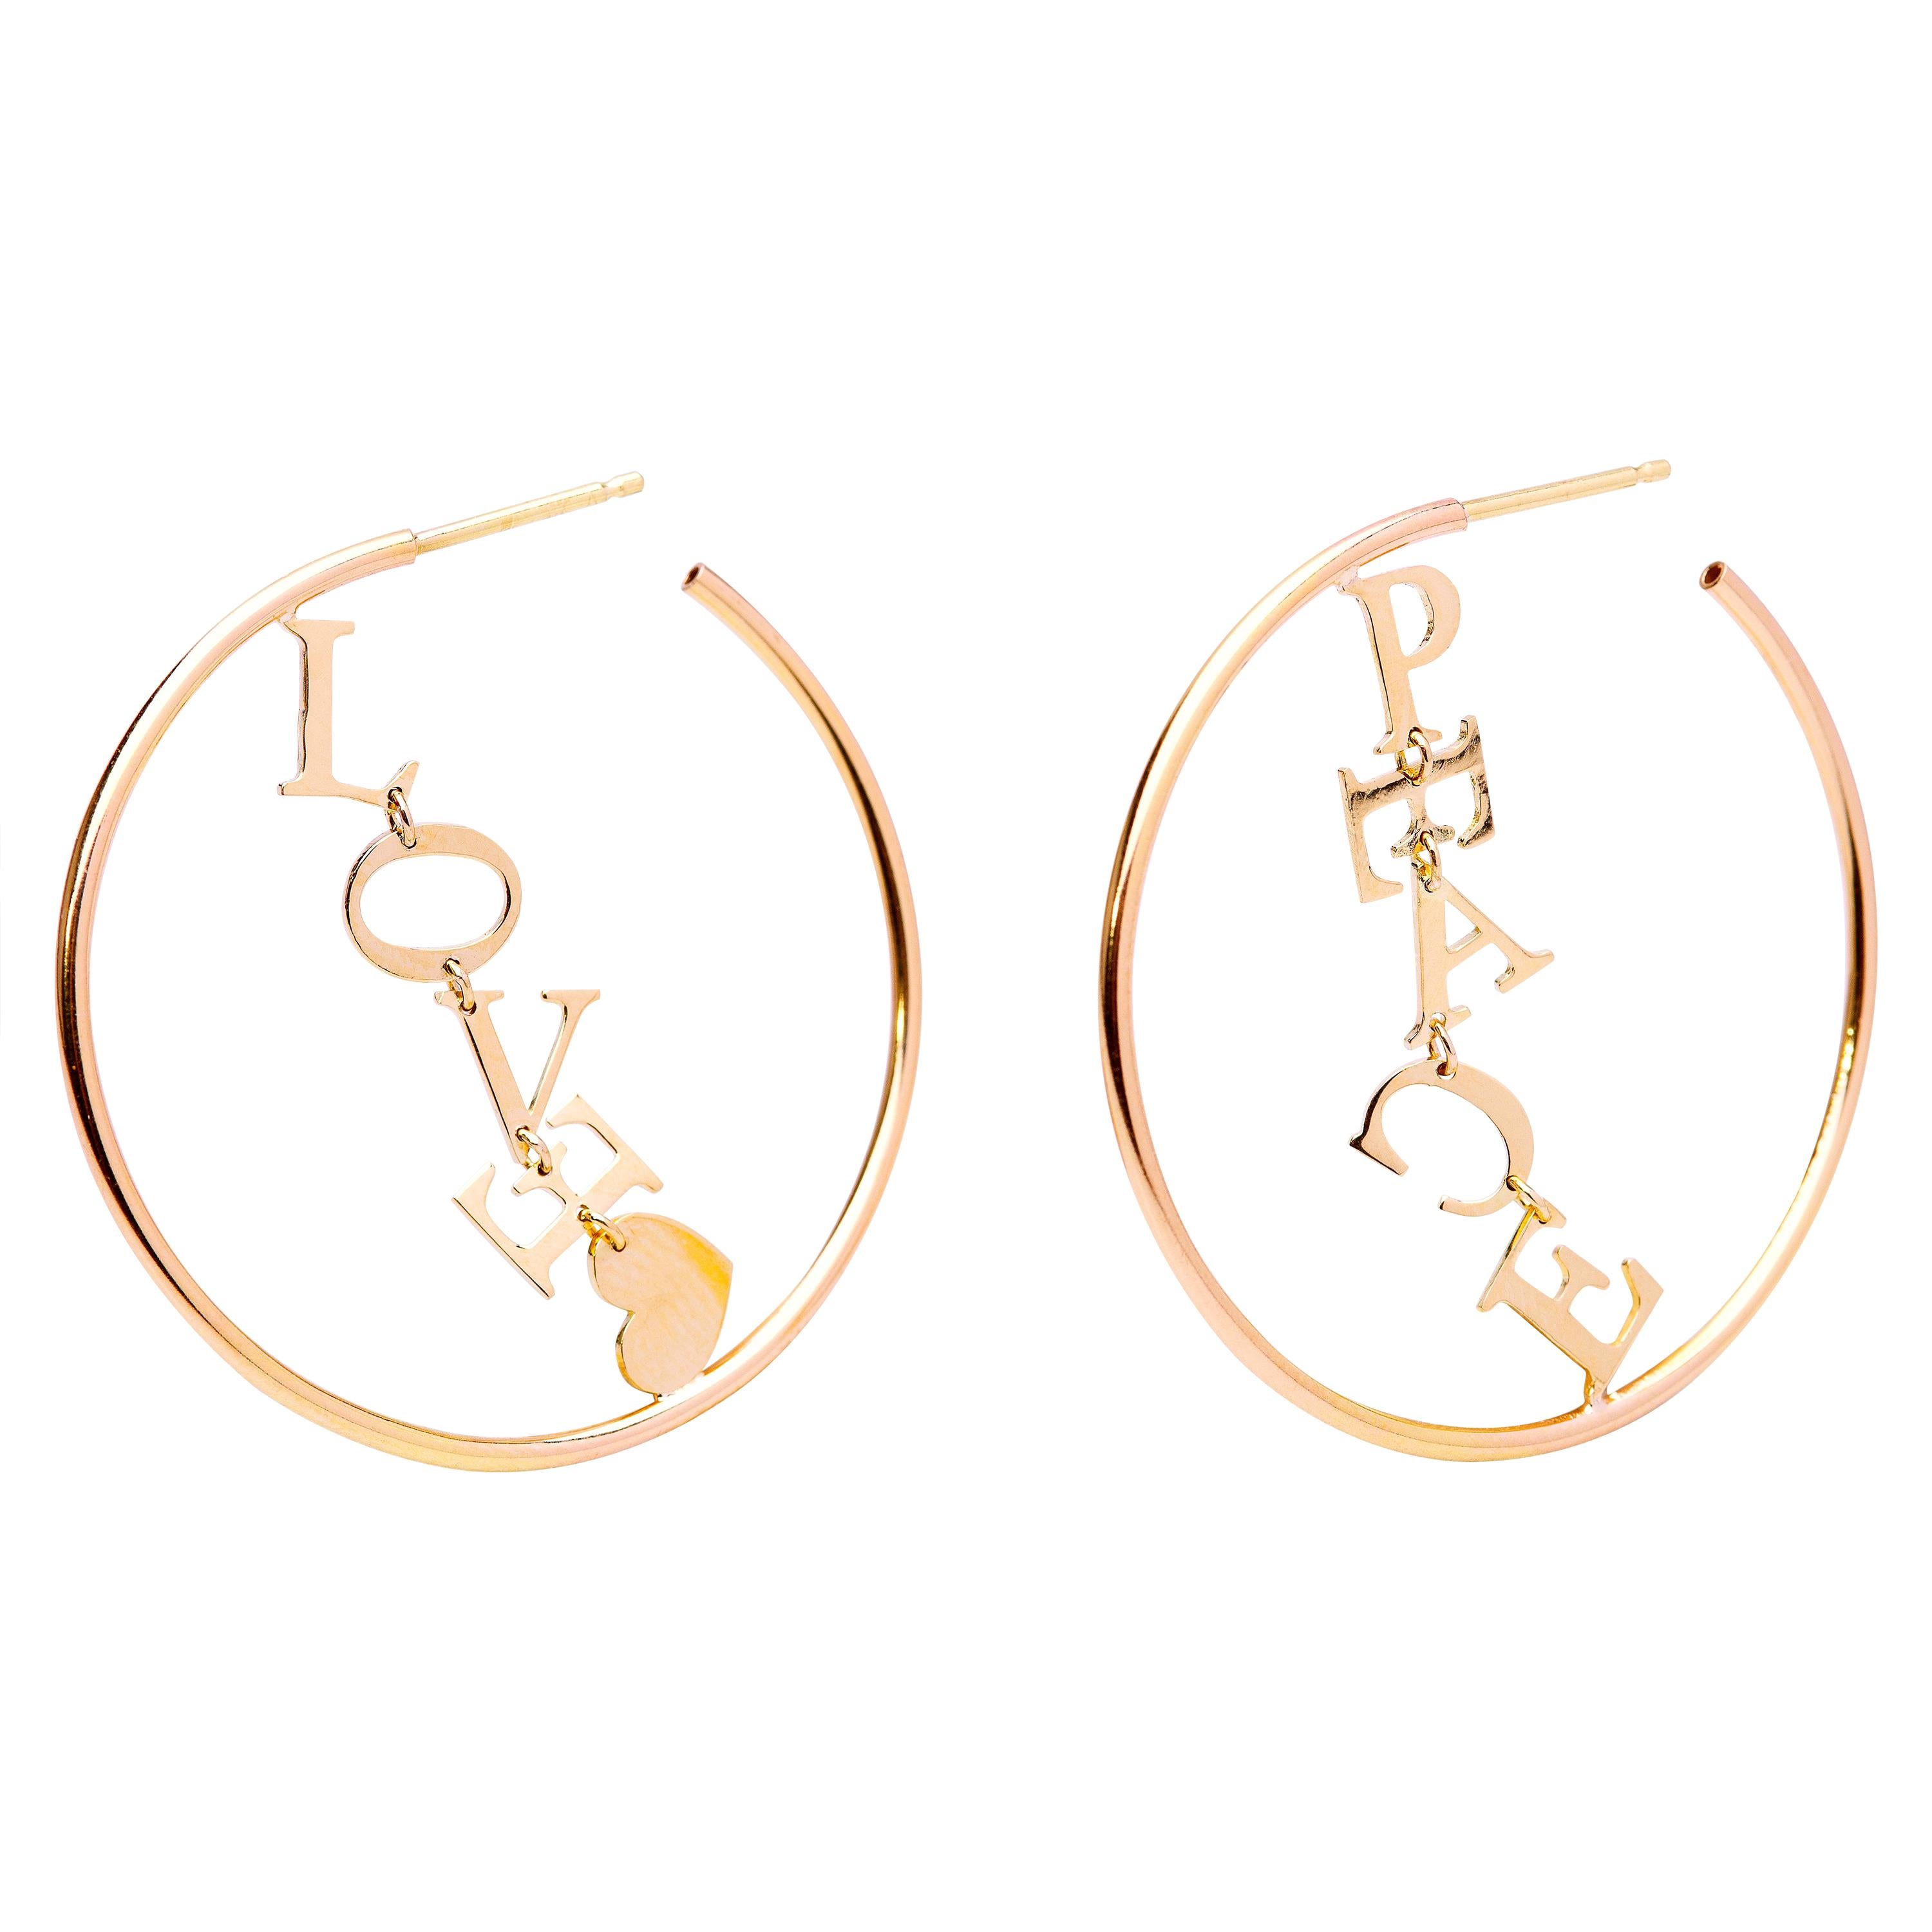 Frieden und Liebe 18K Gelbgold Kreis-Ohrringe mit zeitgenössischem Design